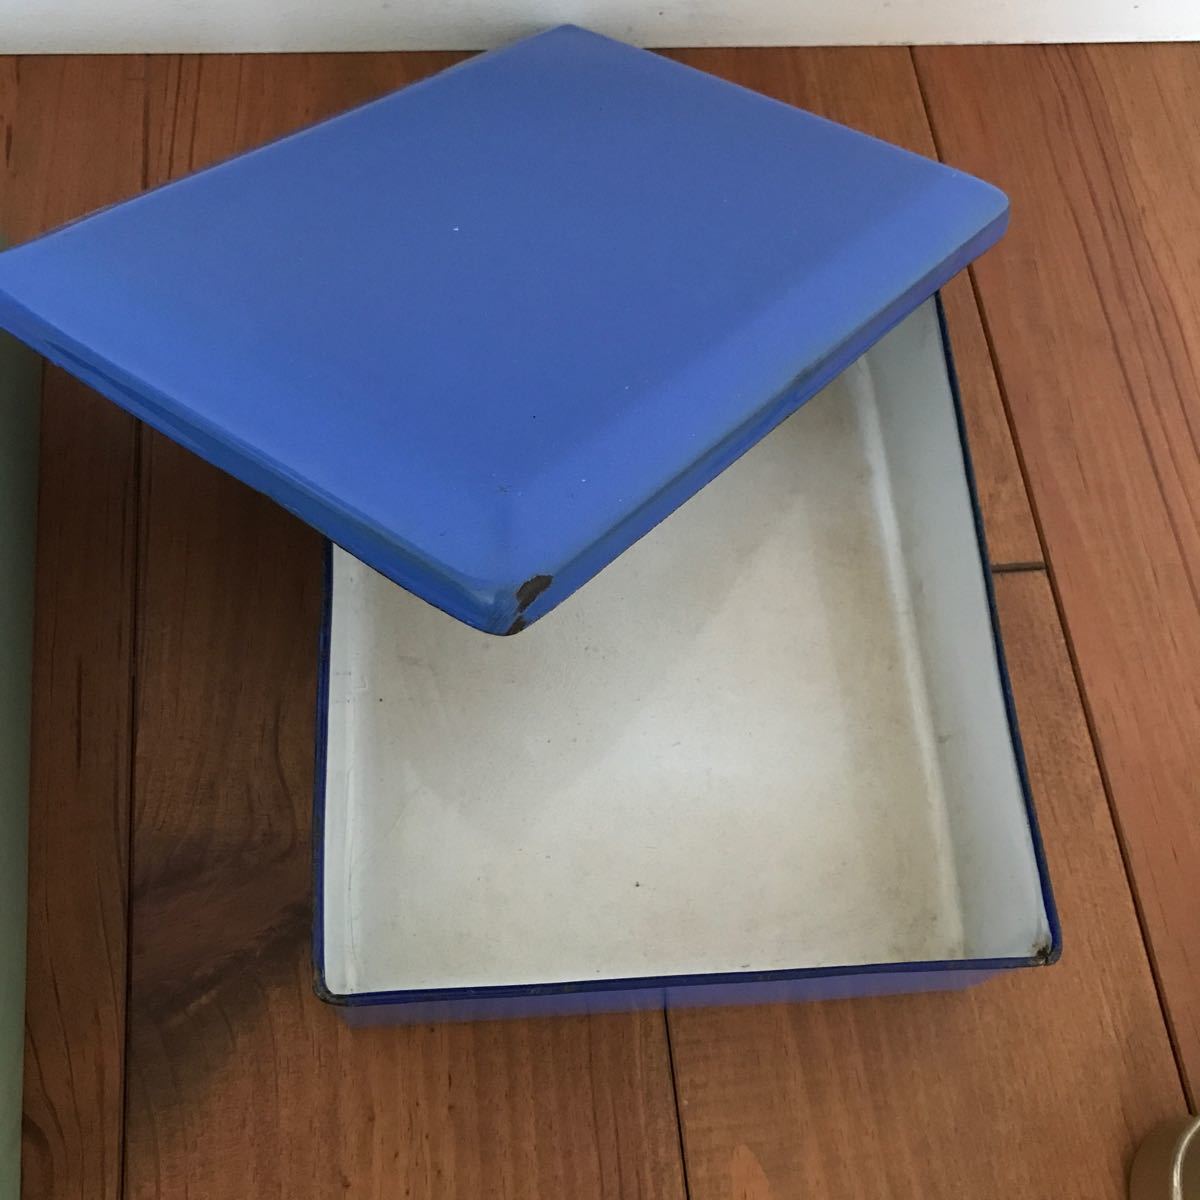  античный старый инструмент крышка имеется эмалированный товар эмаль сигнал low bat aluminium коробка для завтрака Showa Retro коробка для швейных принадлежностей Dokaben кухня смешанные товары смешанные товары продажа комплектом 